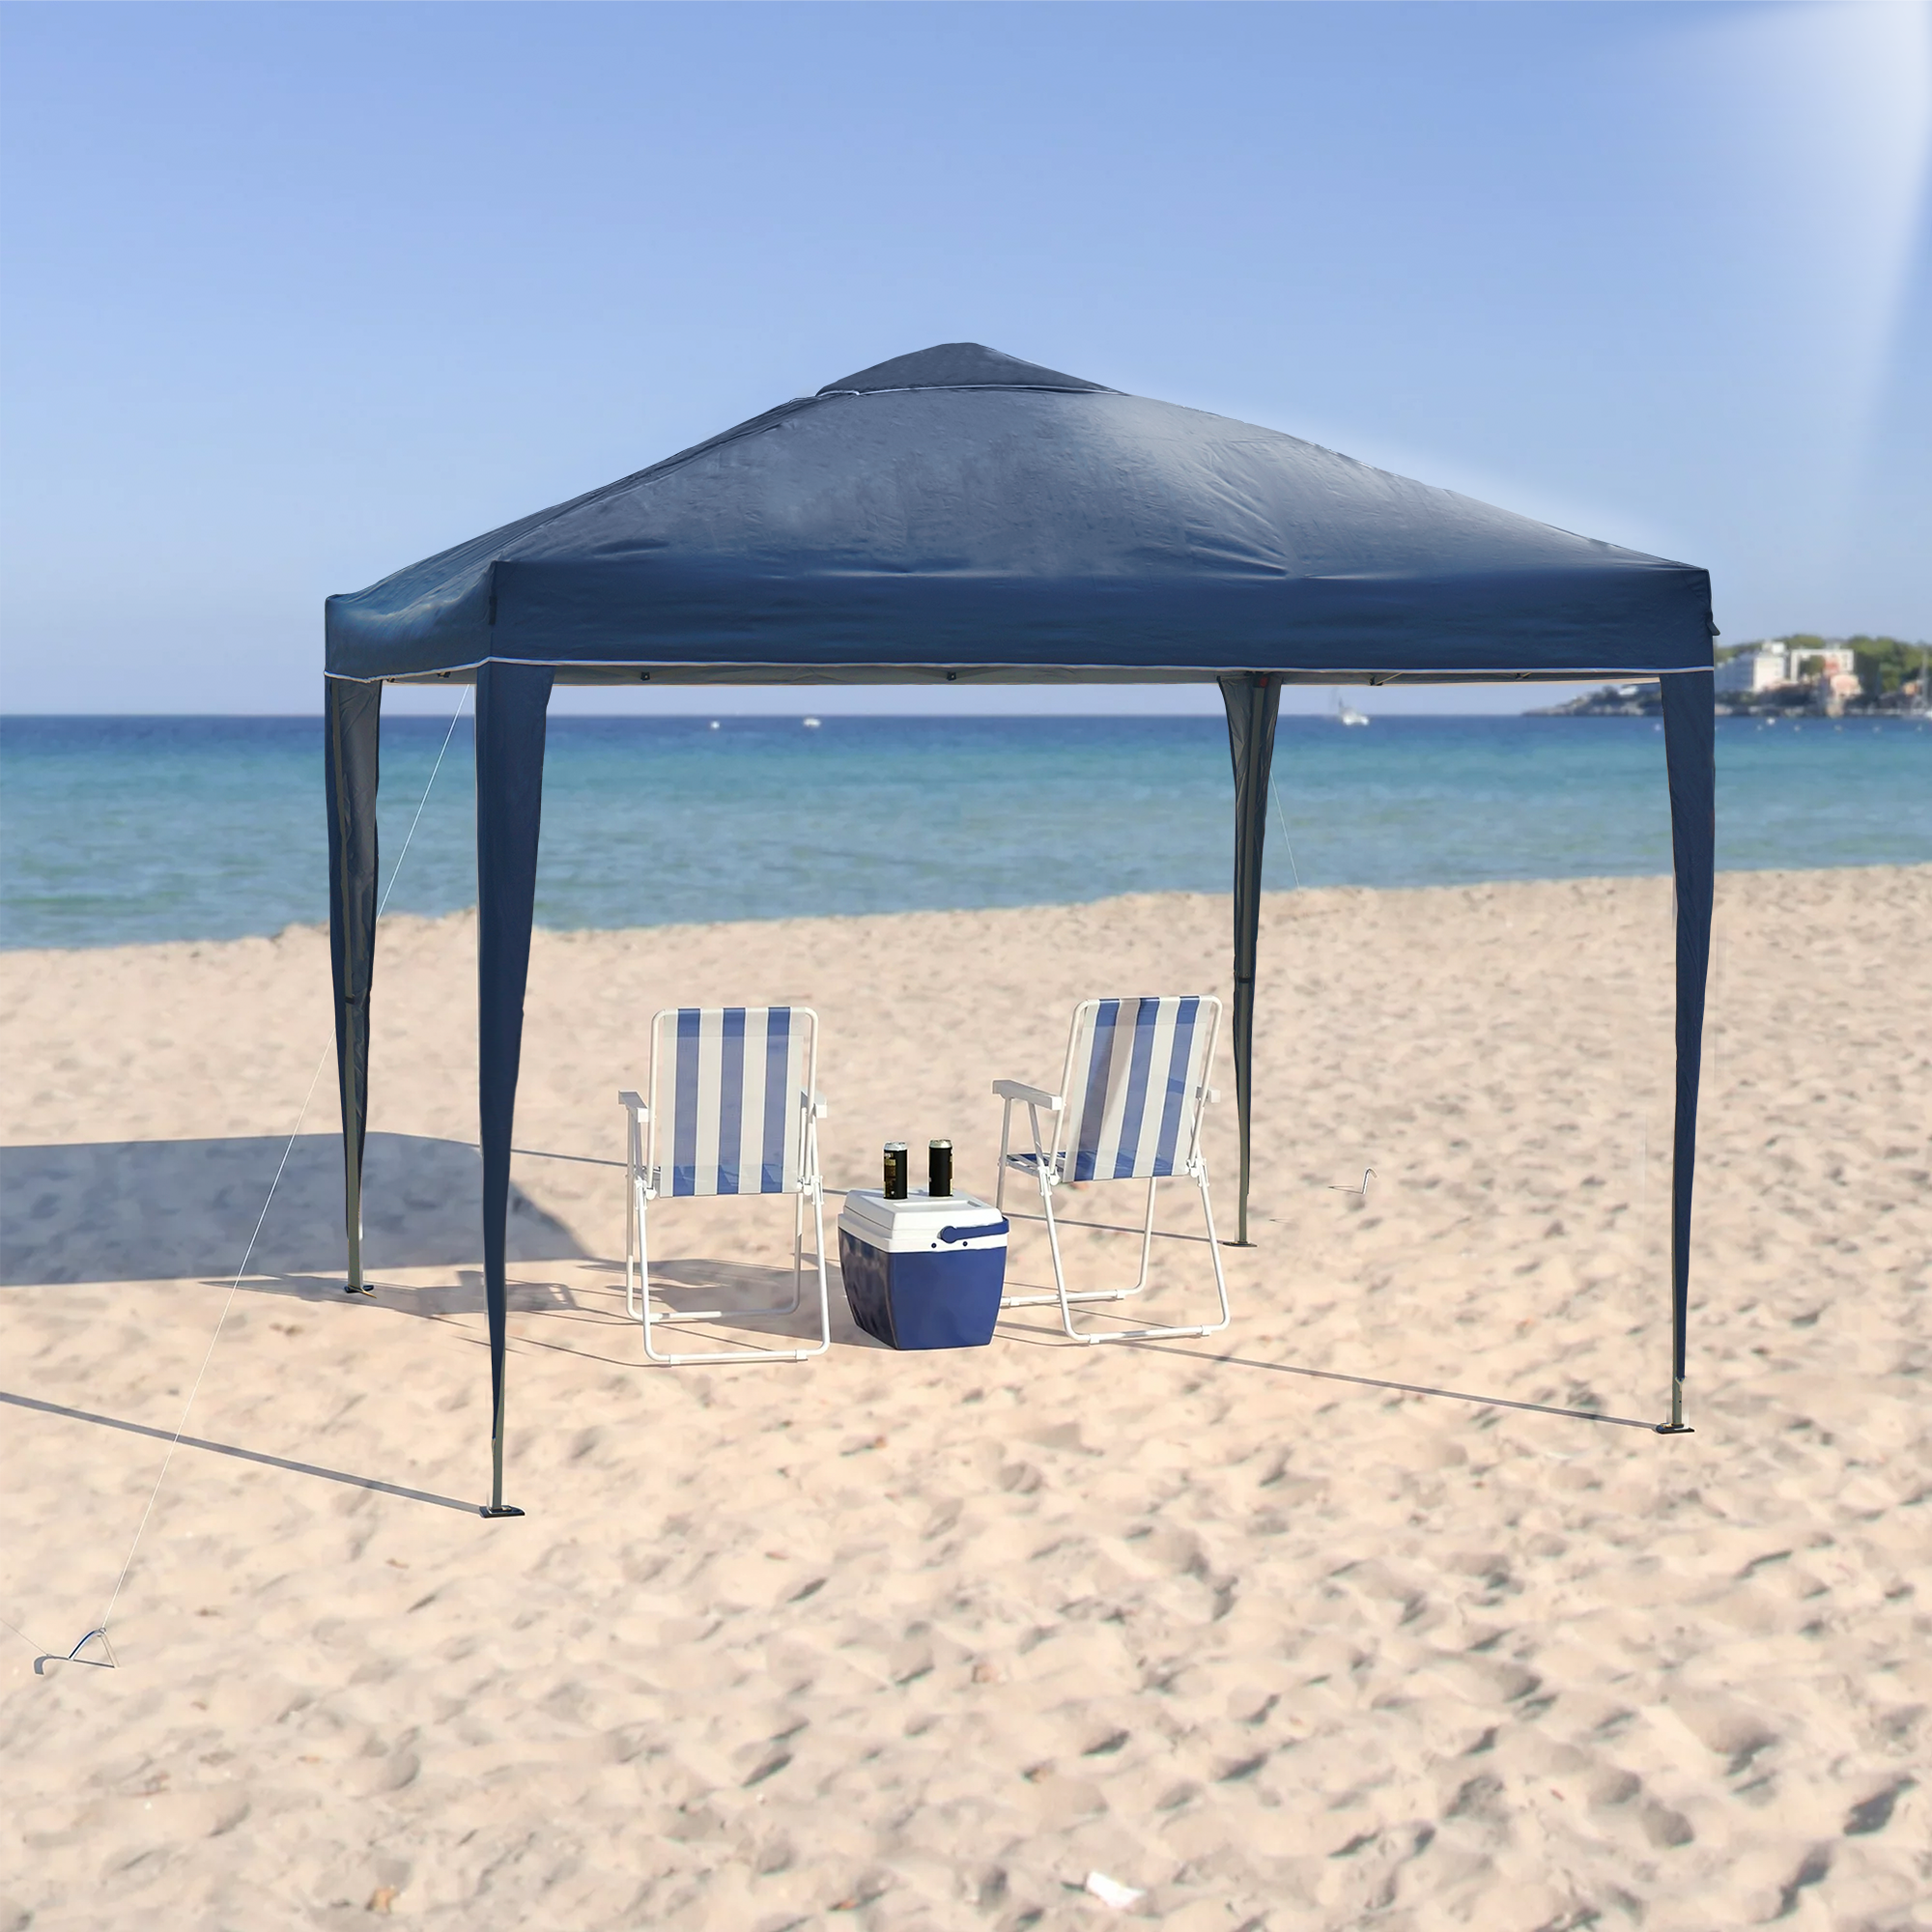 Tenda Articulada Gazebo 3x3m Articulado Alumínio Praia Camping com Bolsa - Azul - 2